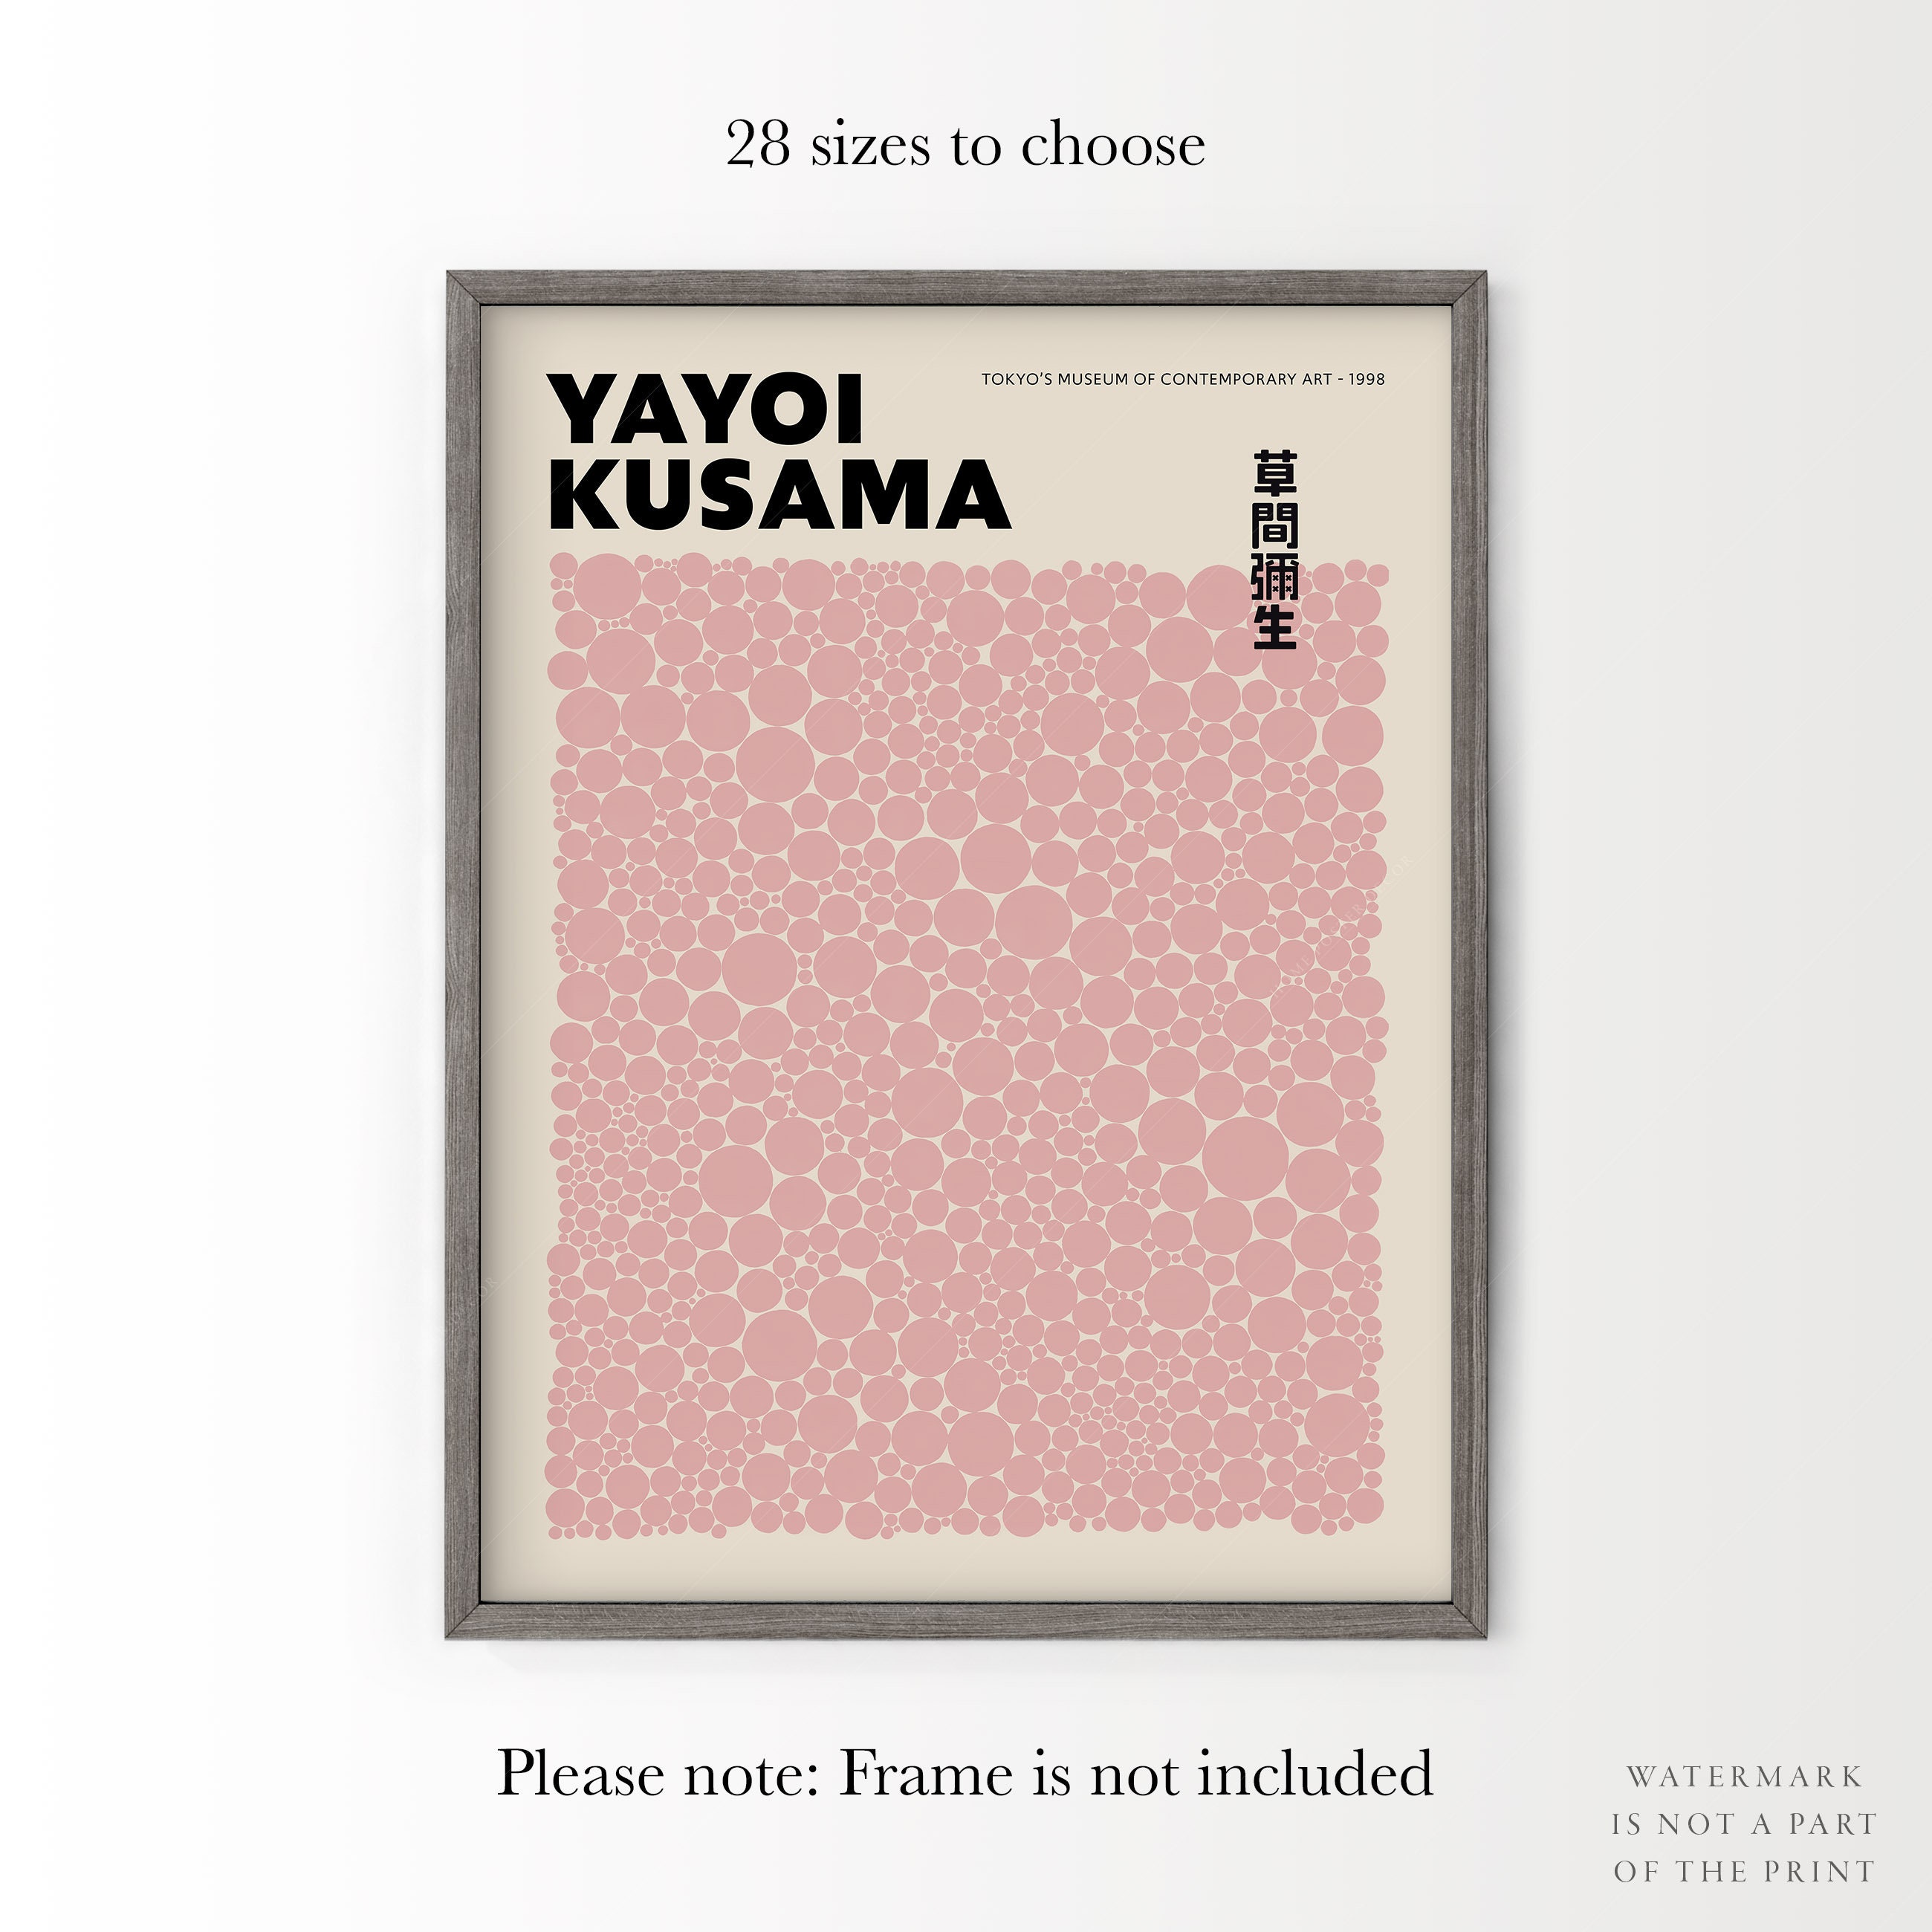 Wall Art 'Yayoi Kusama, Tokyo 1998 - 1 by Art Classics' - Premium Poster,  A4 (21 x 30 cm) 